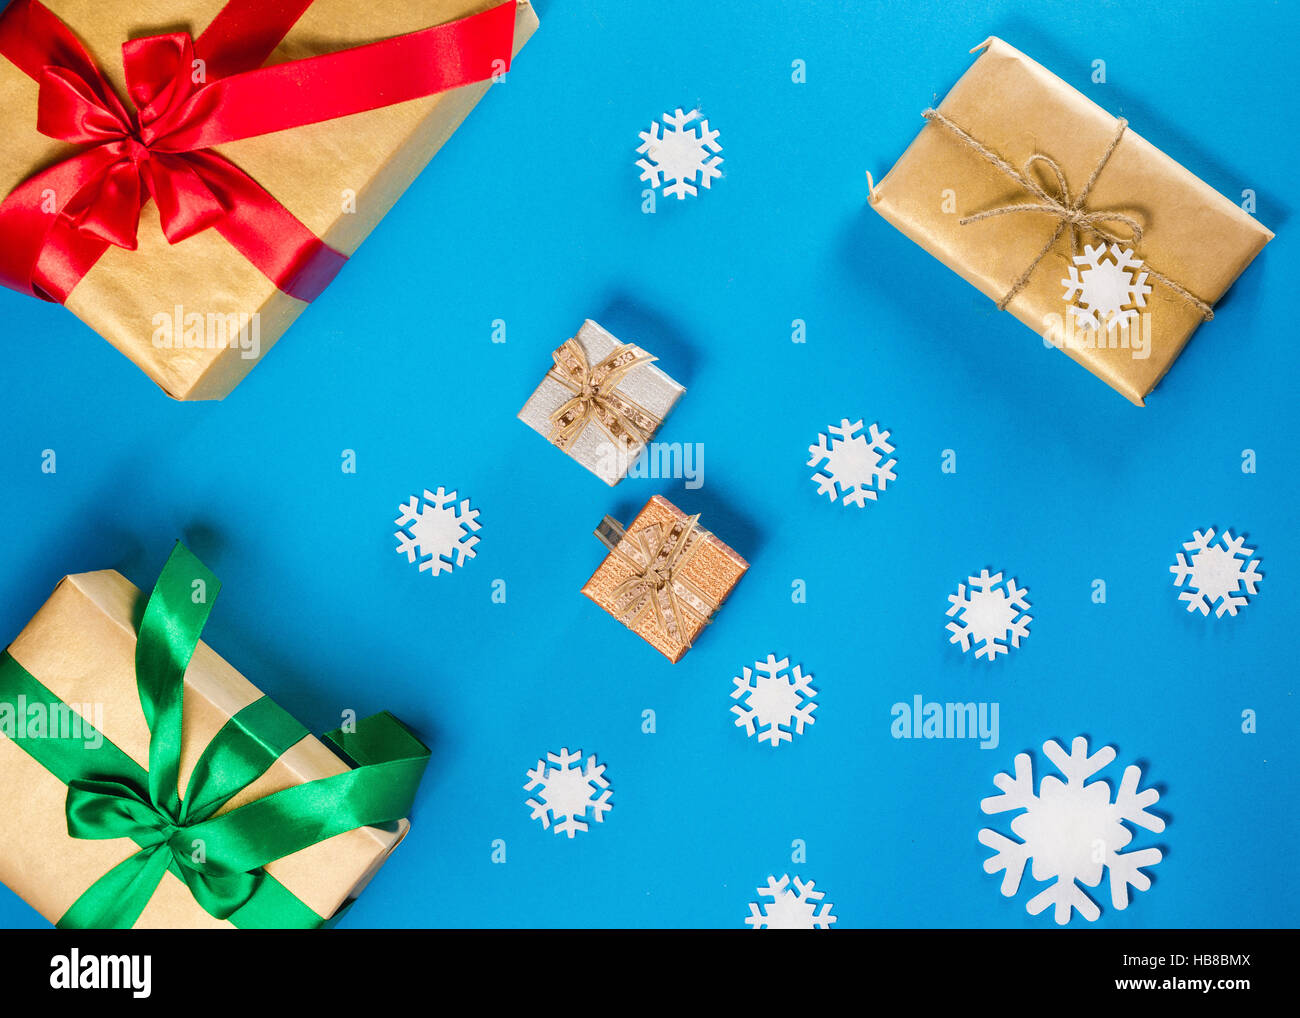 Flache Laien Konzept der Weihnachtsartikel auf a blaue Tabelle. Zusammensetzung enthält Dekorationen, Schneeflocken, Beeren und Zweigen mit Geschenken. Stockfoto